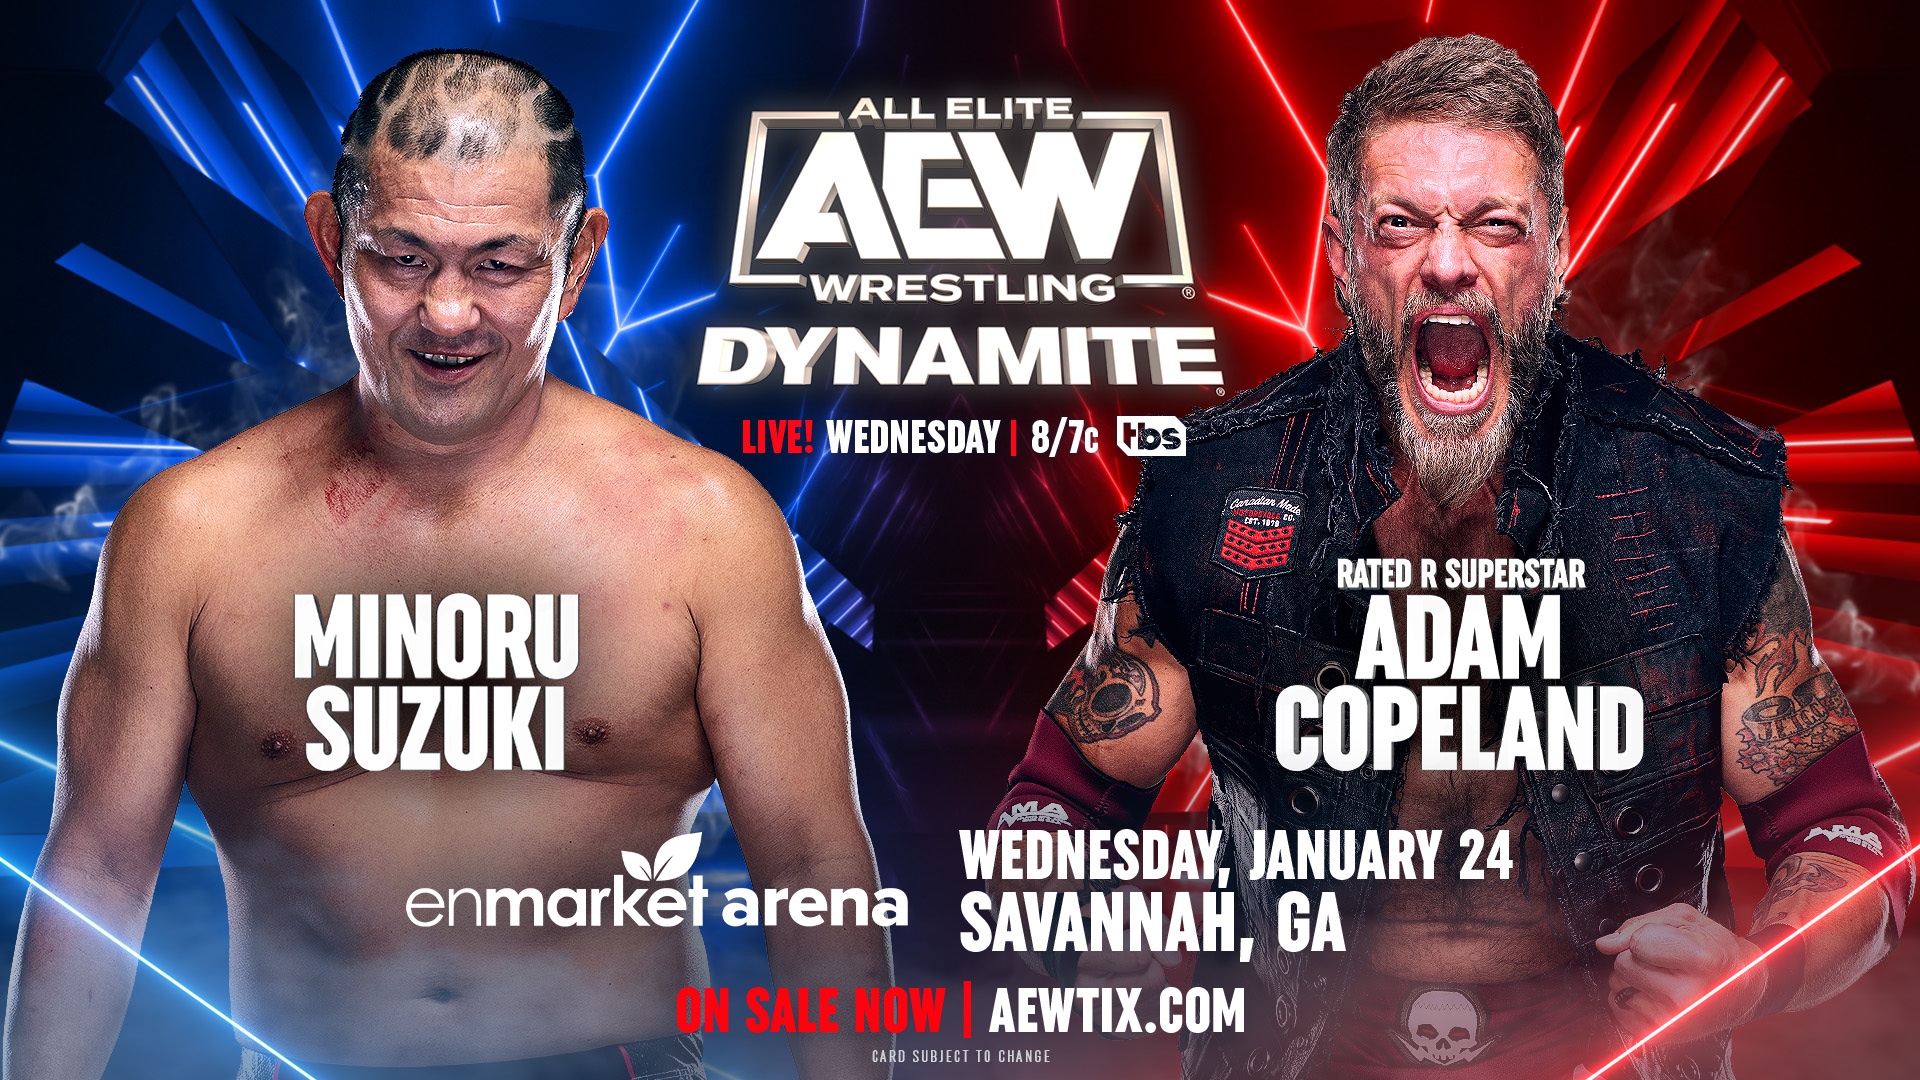 AEW Dynamite Minoru Suzuki vs. "Rated R Superstar" Adam Copeland Match Graphic